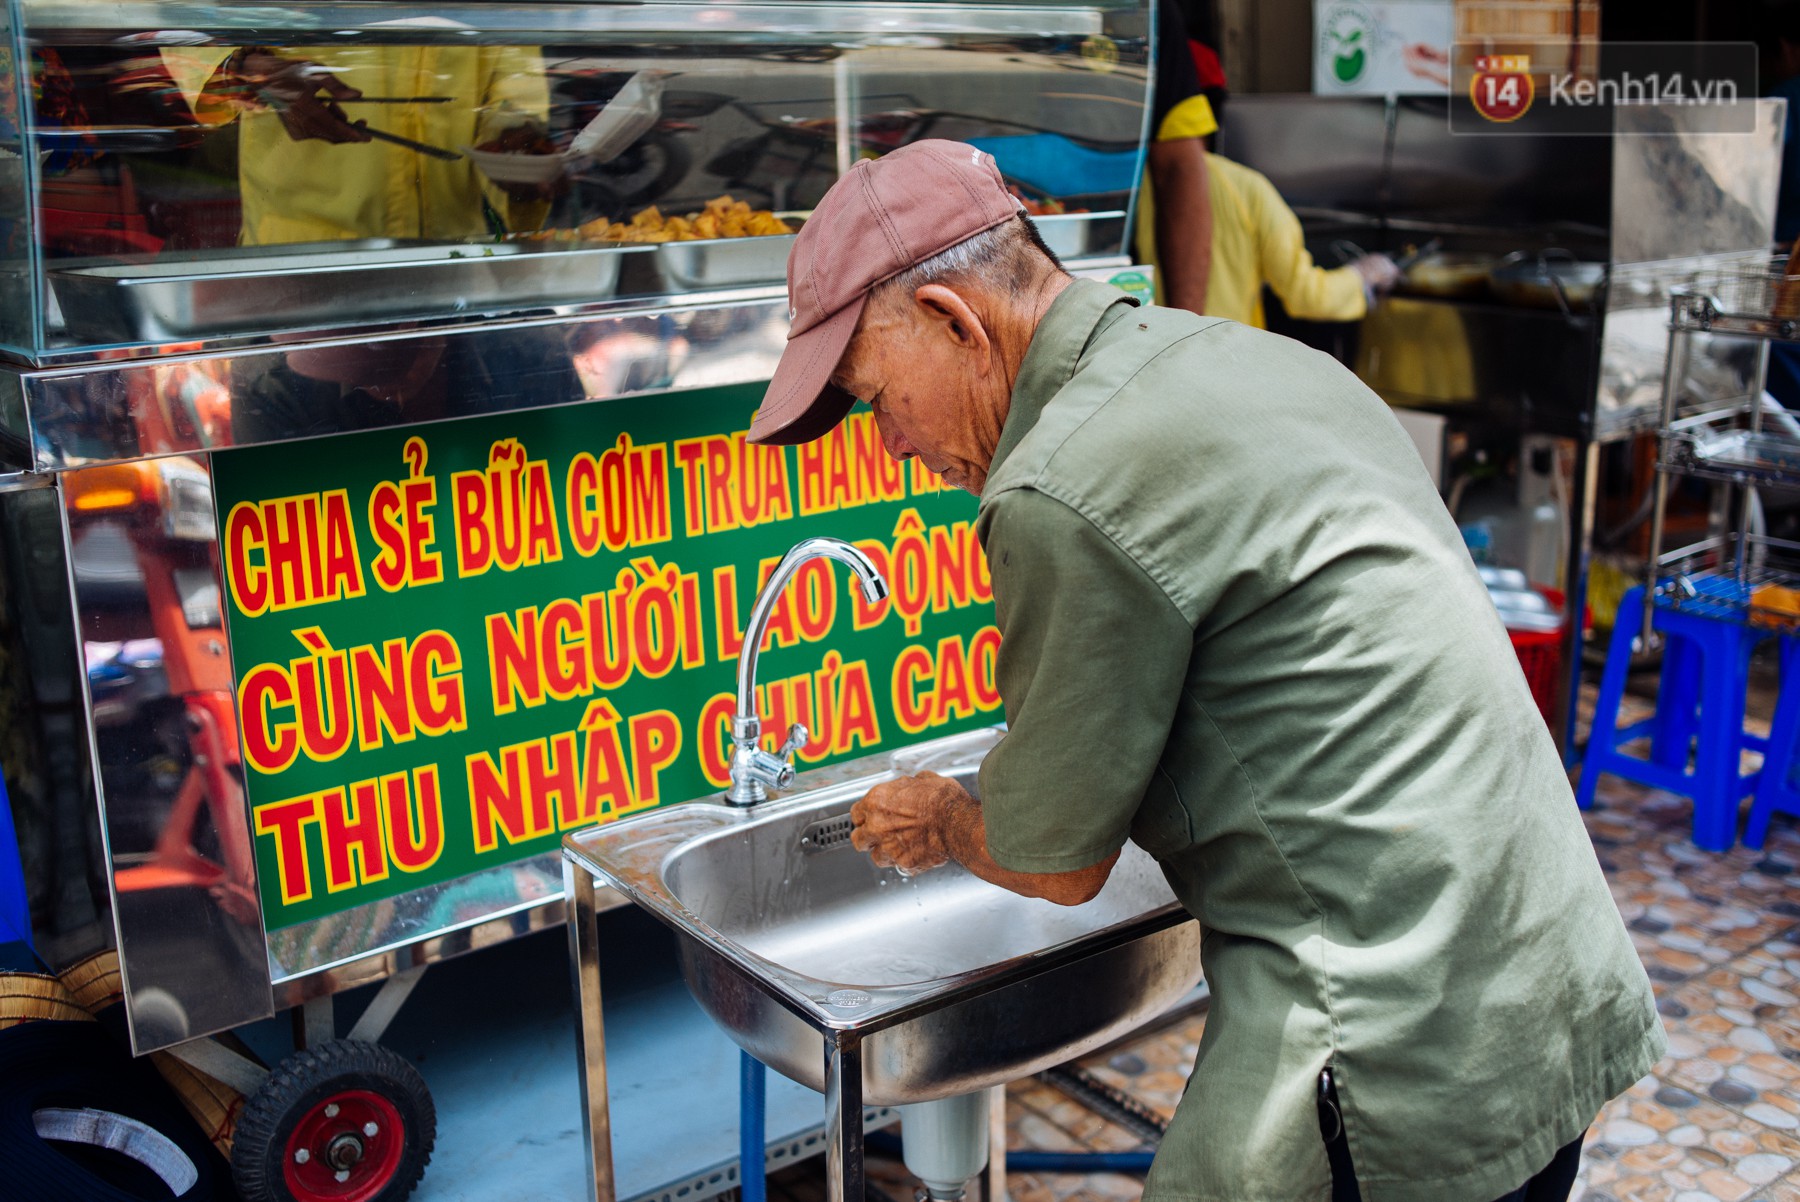 Giàu như anh bán chuối chiên Sài Gòn: Mở quán cơm 5k cho người thu nhập chưa cao, 5 năm đắt hàng - Ảnh 1.